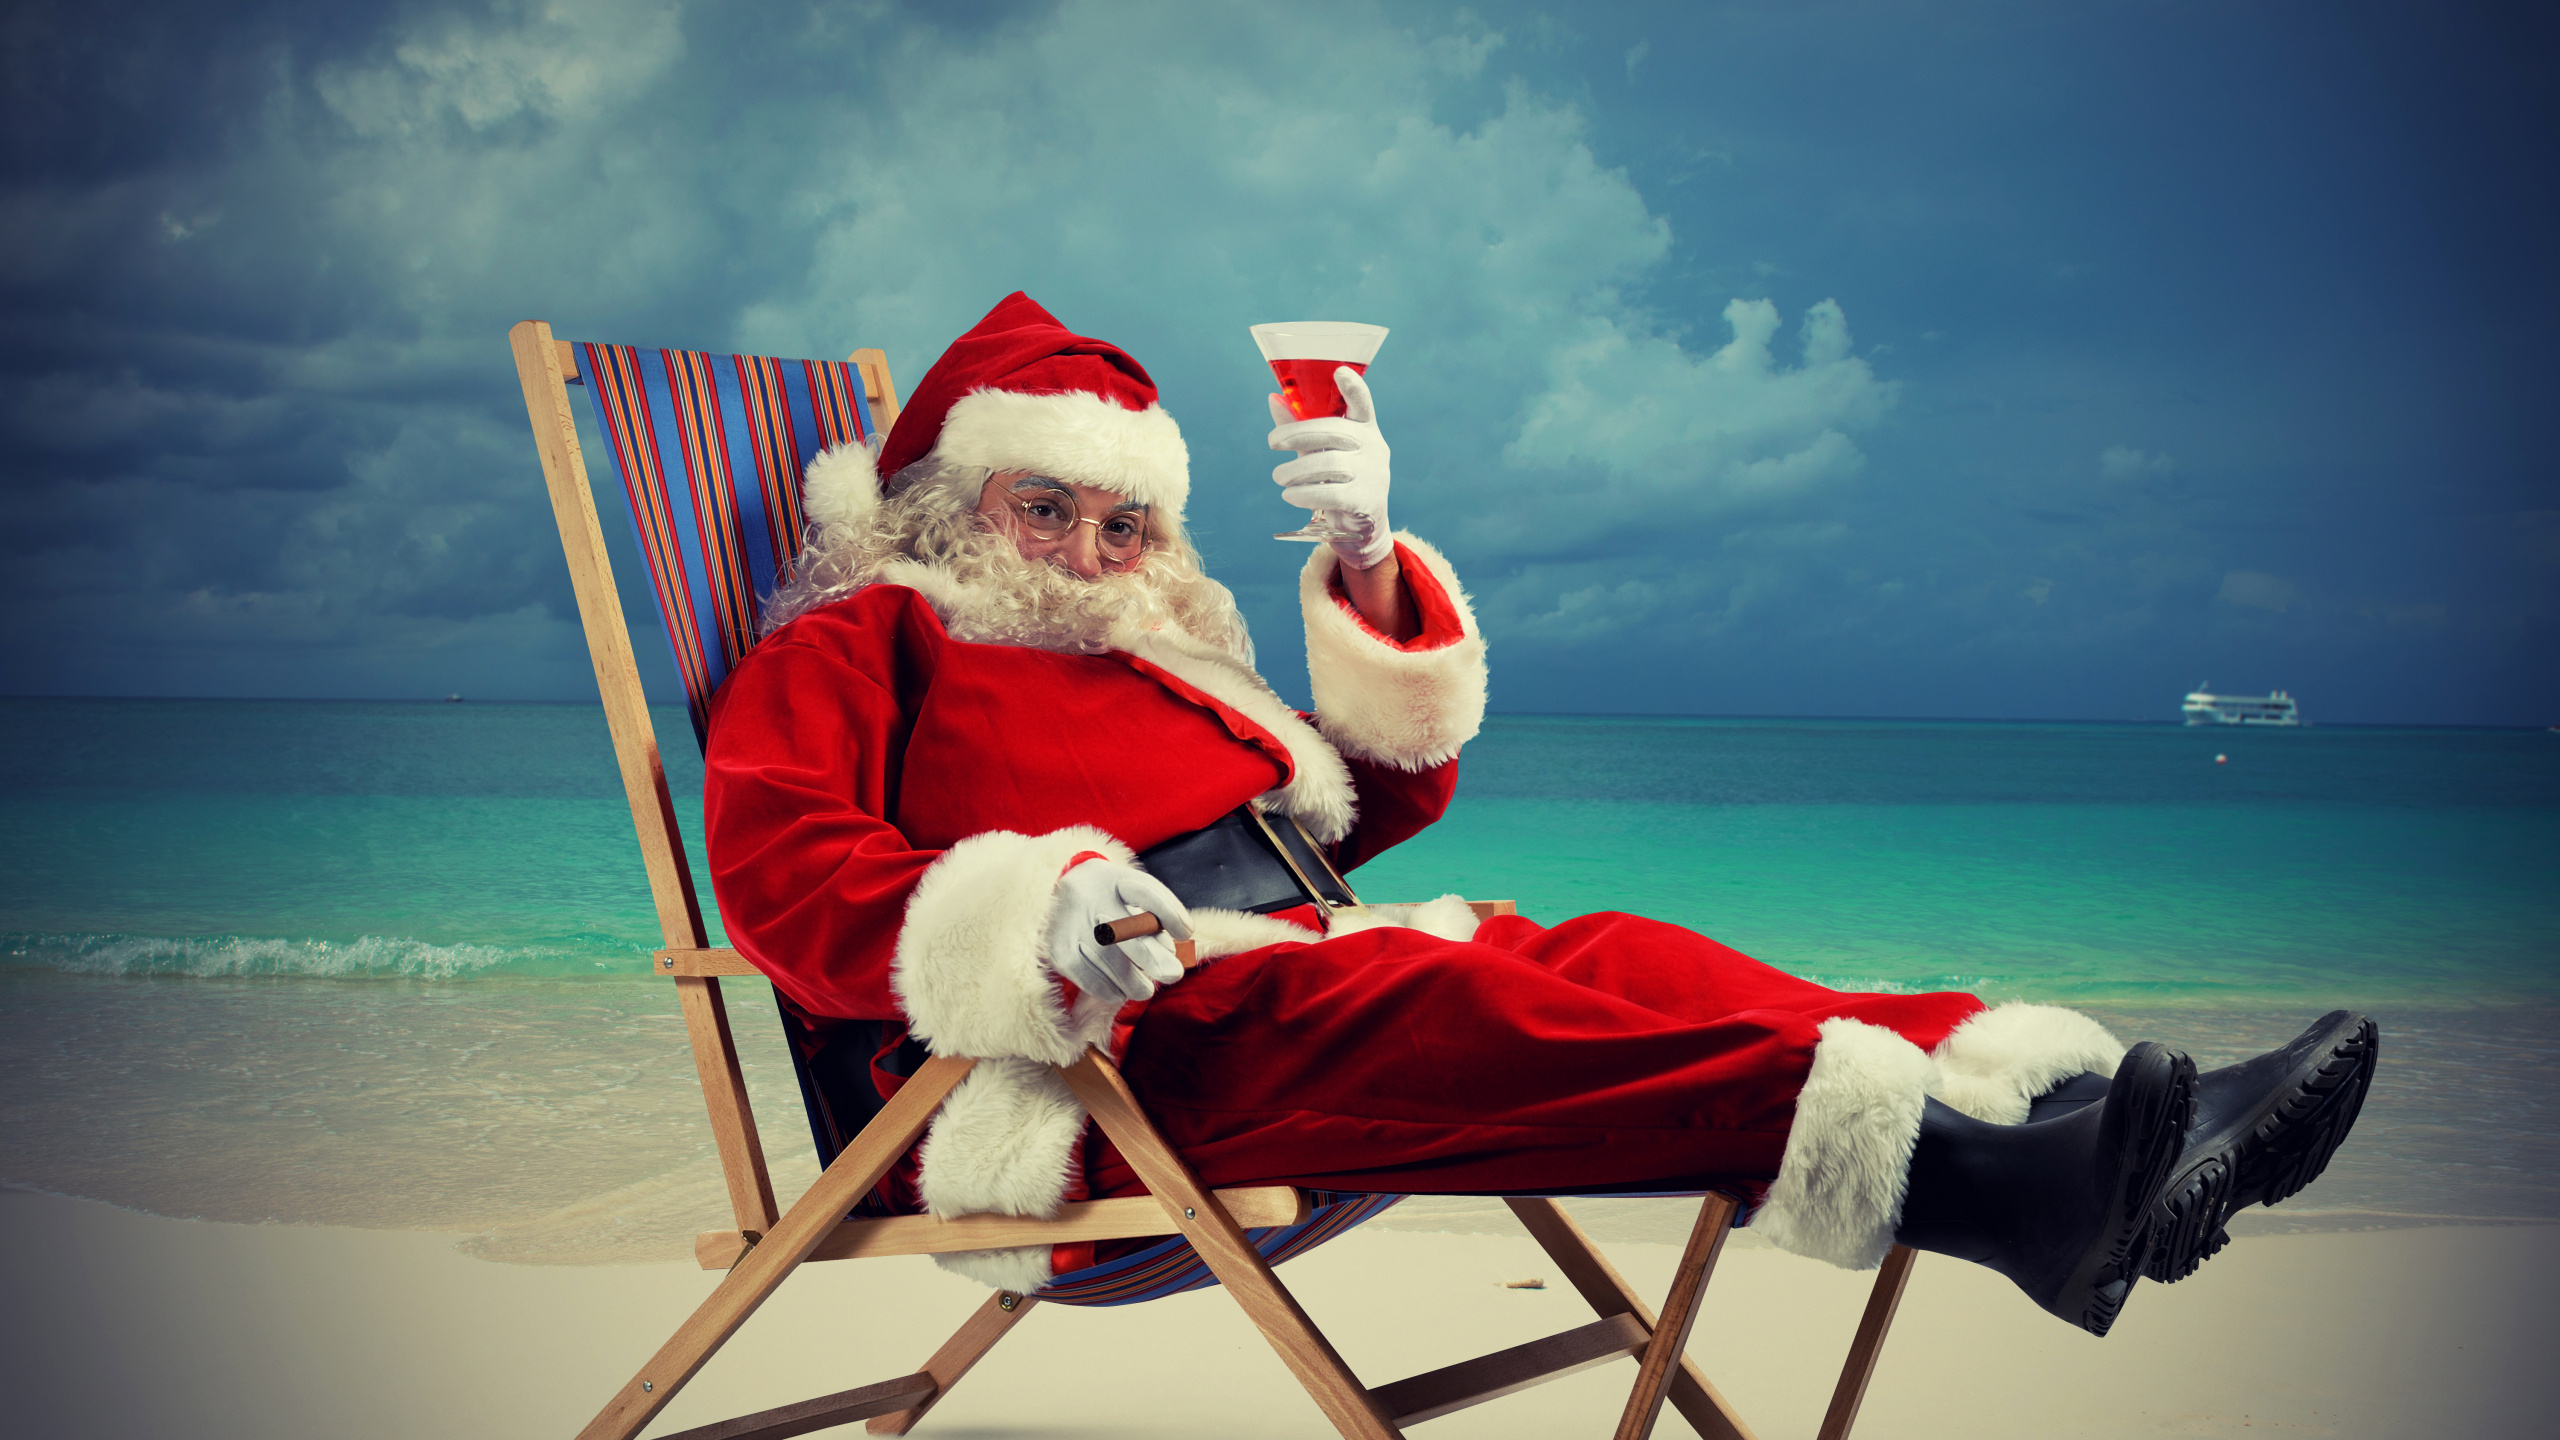 El Día De Navidad, Santa Claus, Navidad, Ded Moroz, Vacaciones. Wallpaper in 2560x1440 Resolution